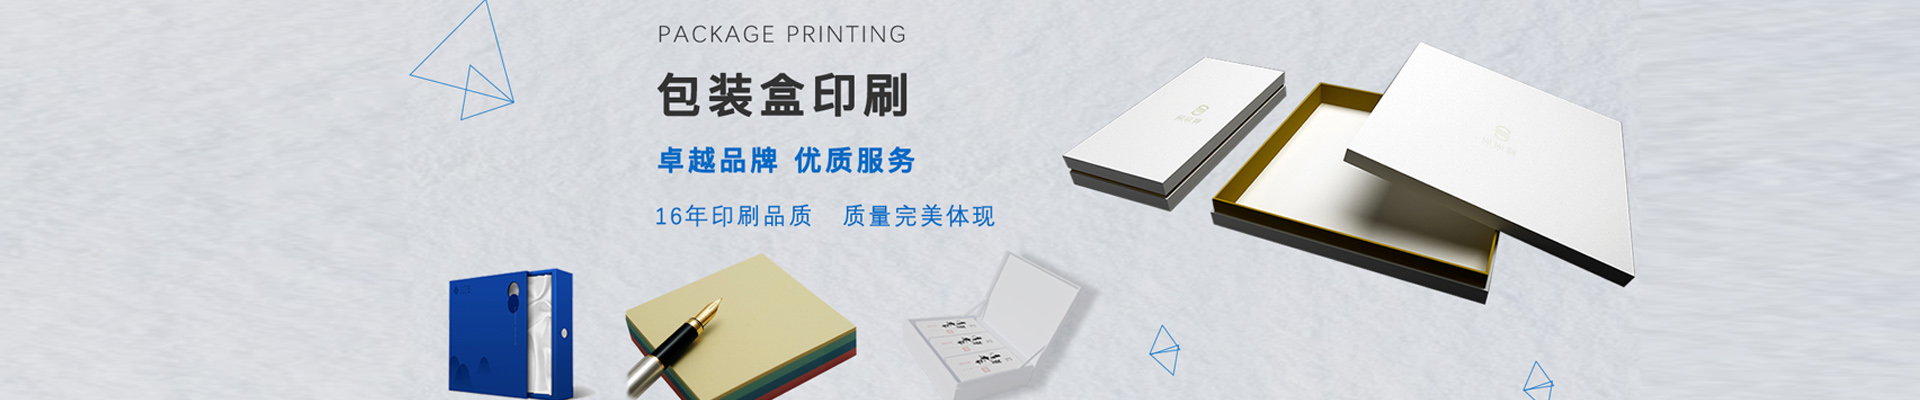 北京石景山区画册印刷流程